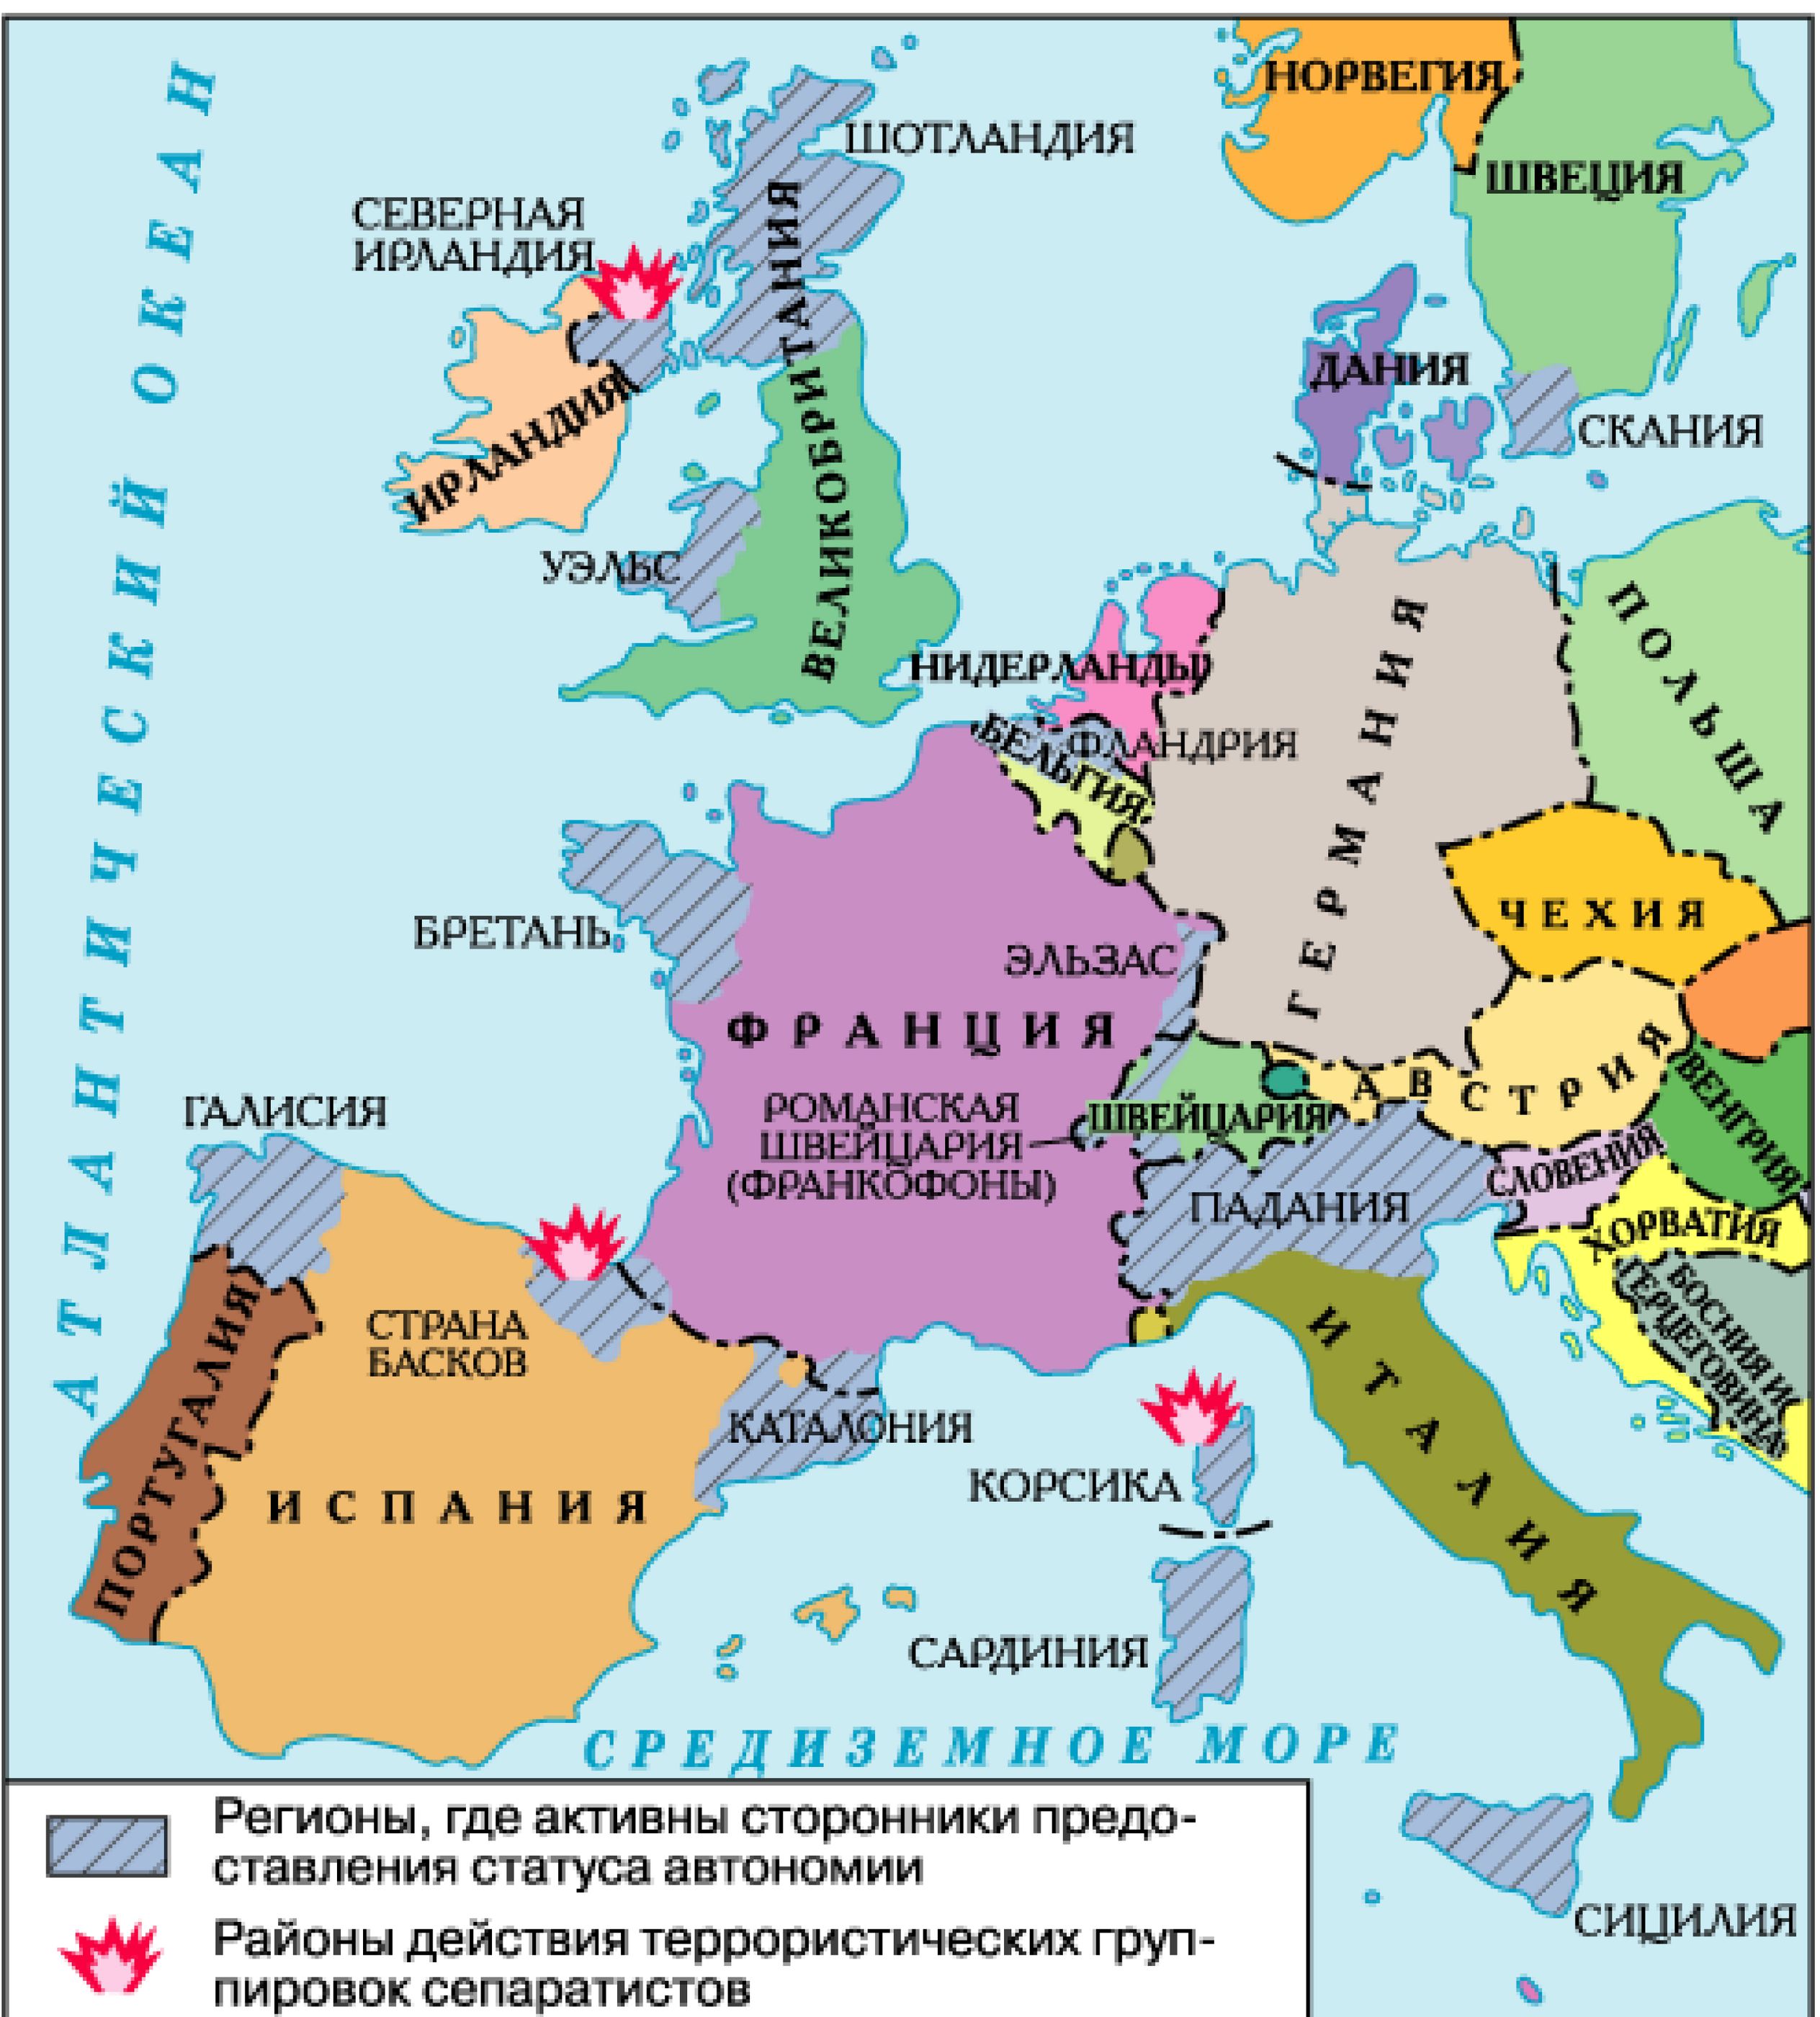 Західна Європа: території, що вимагають надання незалежності (автономії)